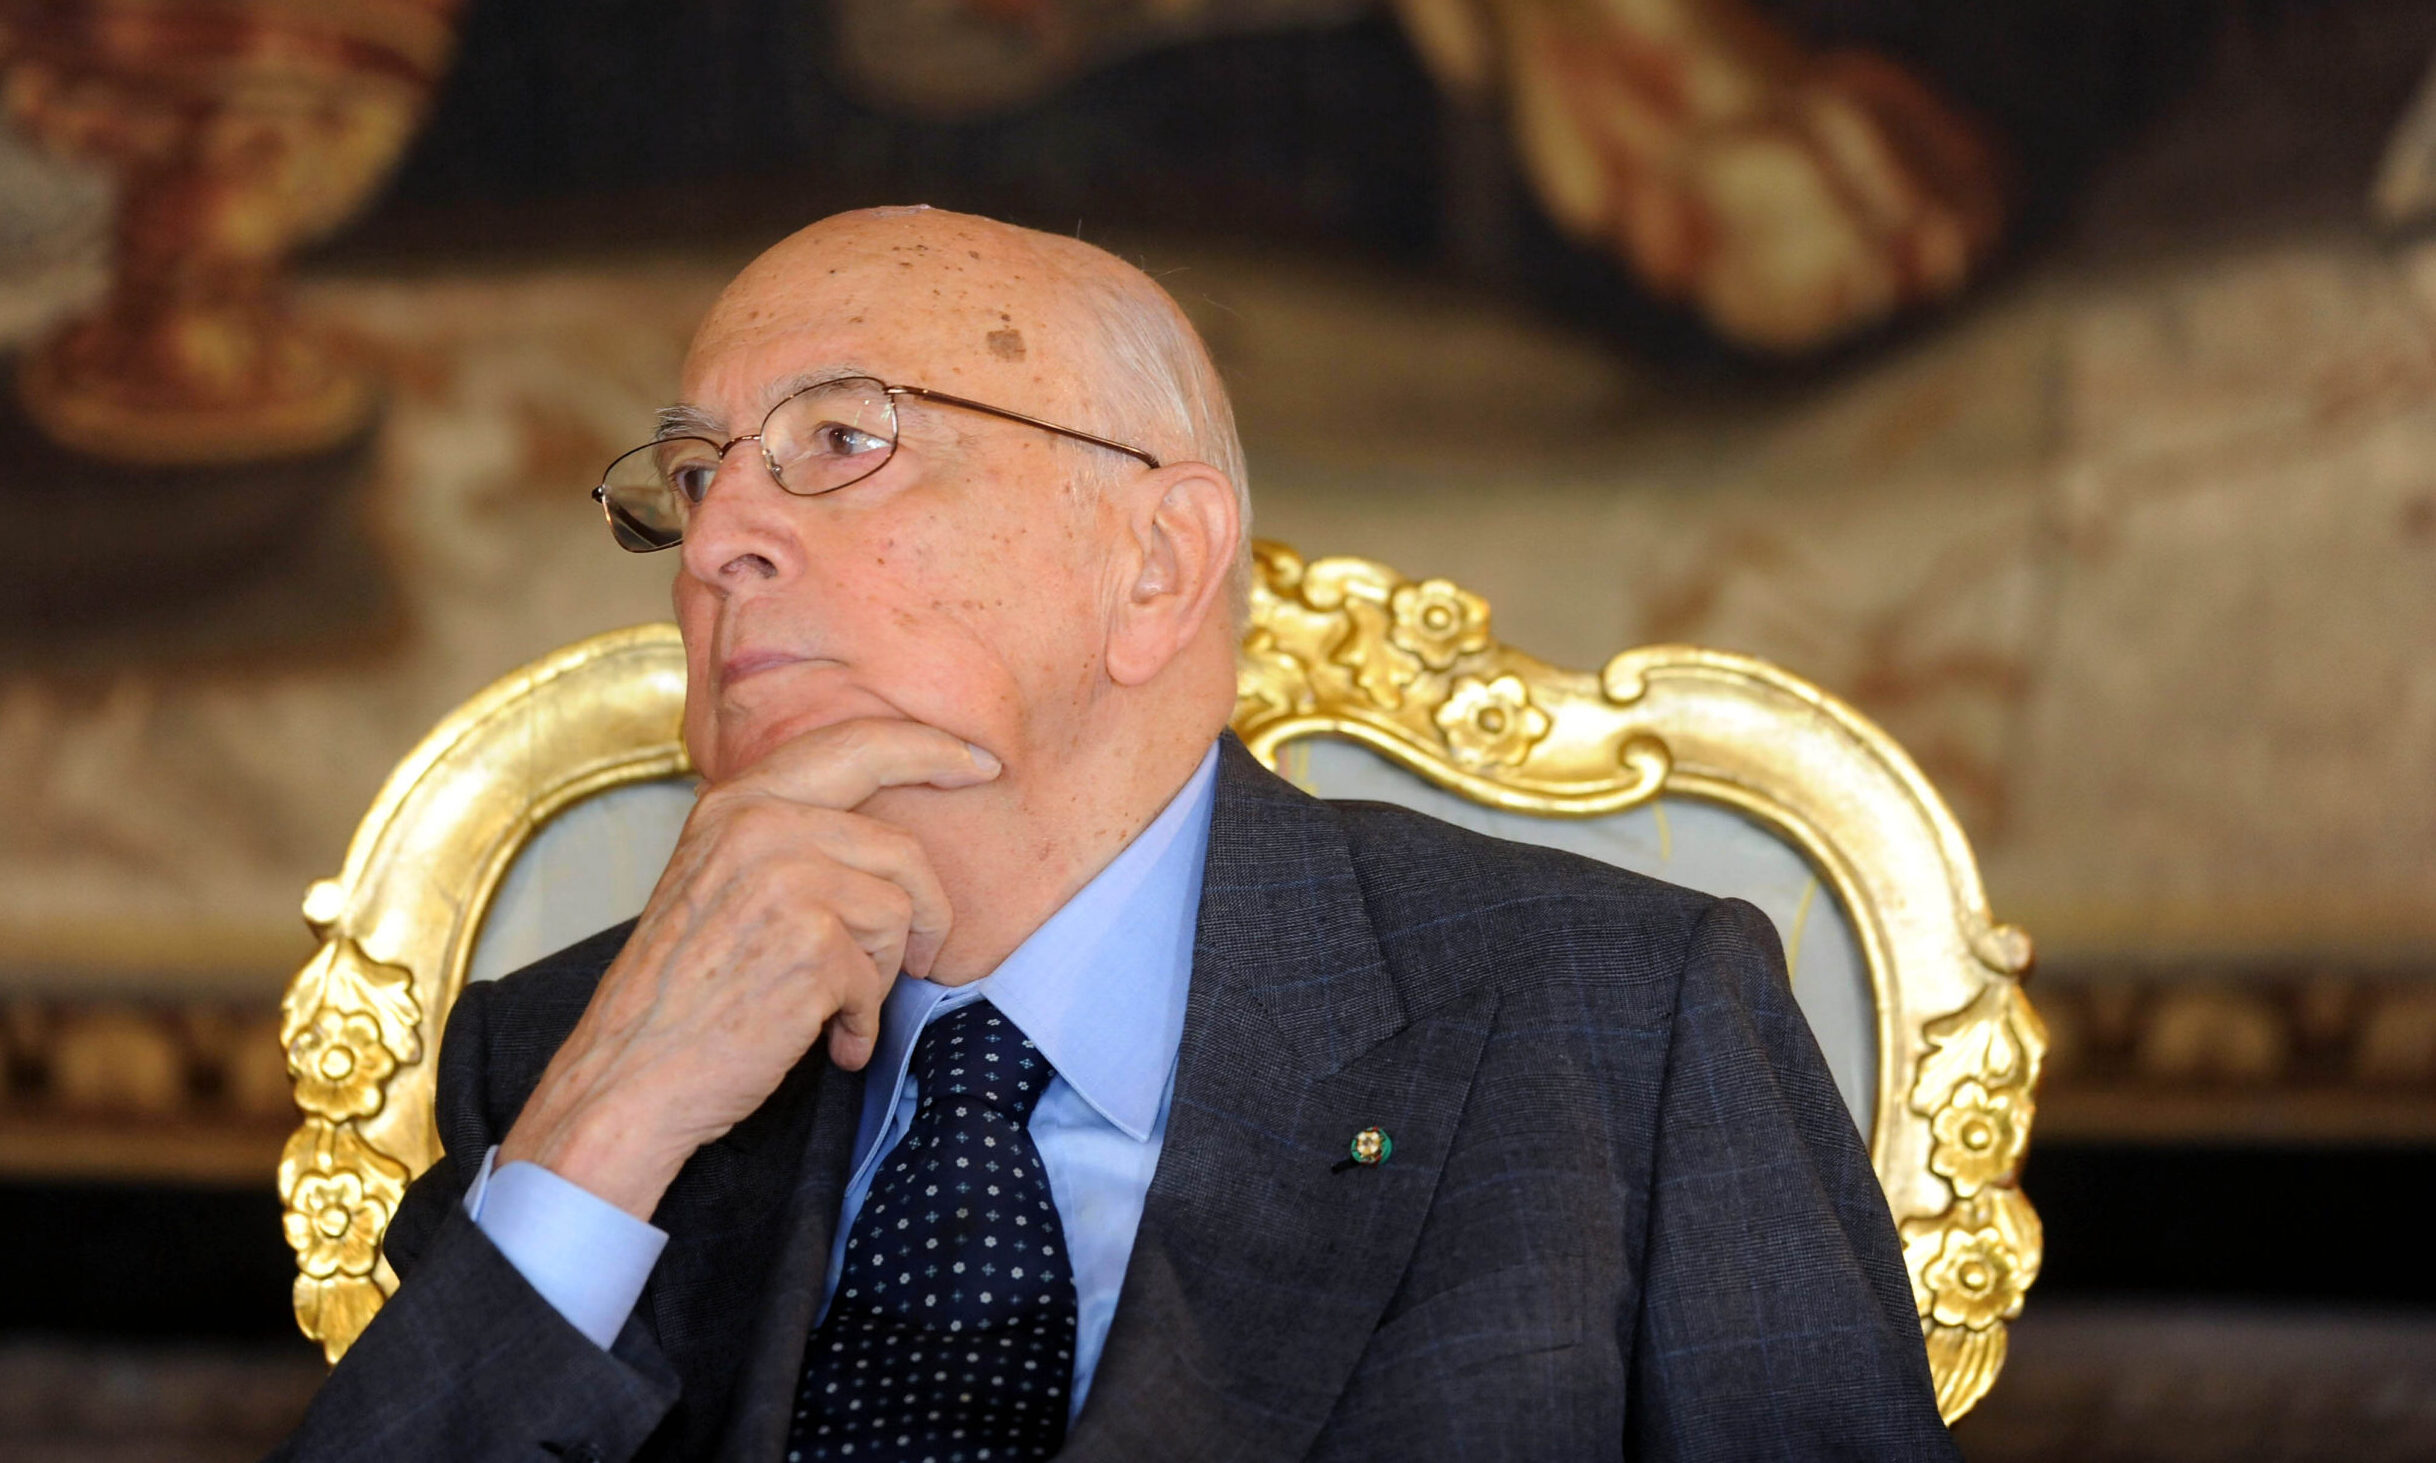 Italie: décès de l'ancien président Giorgio Napolitano